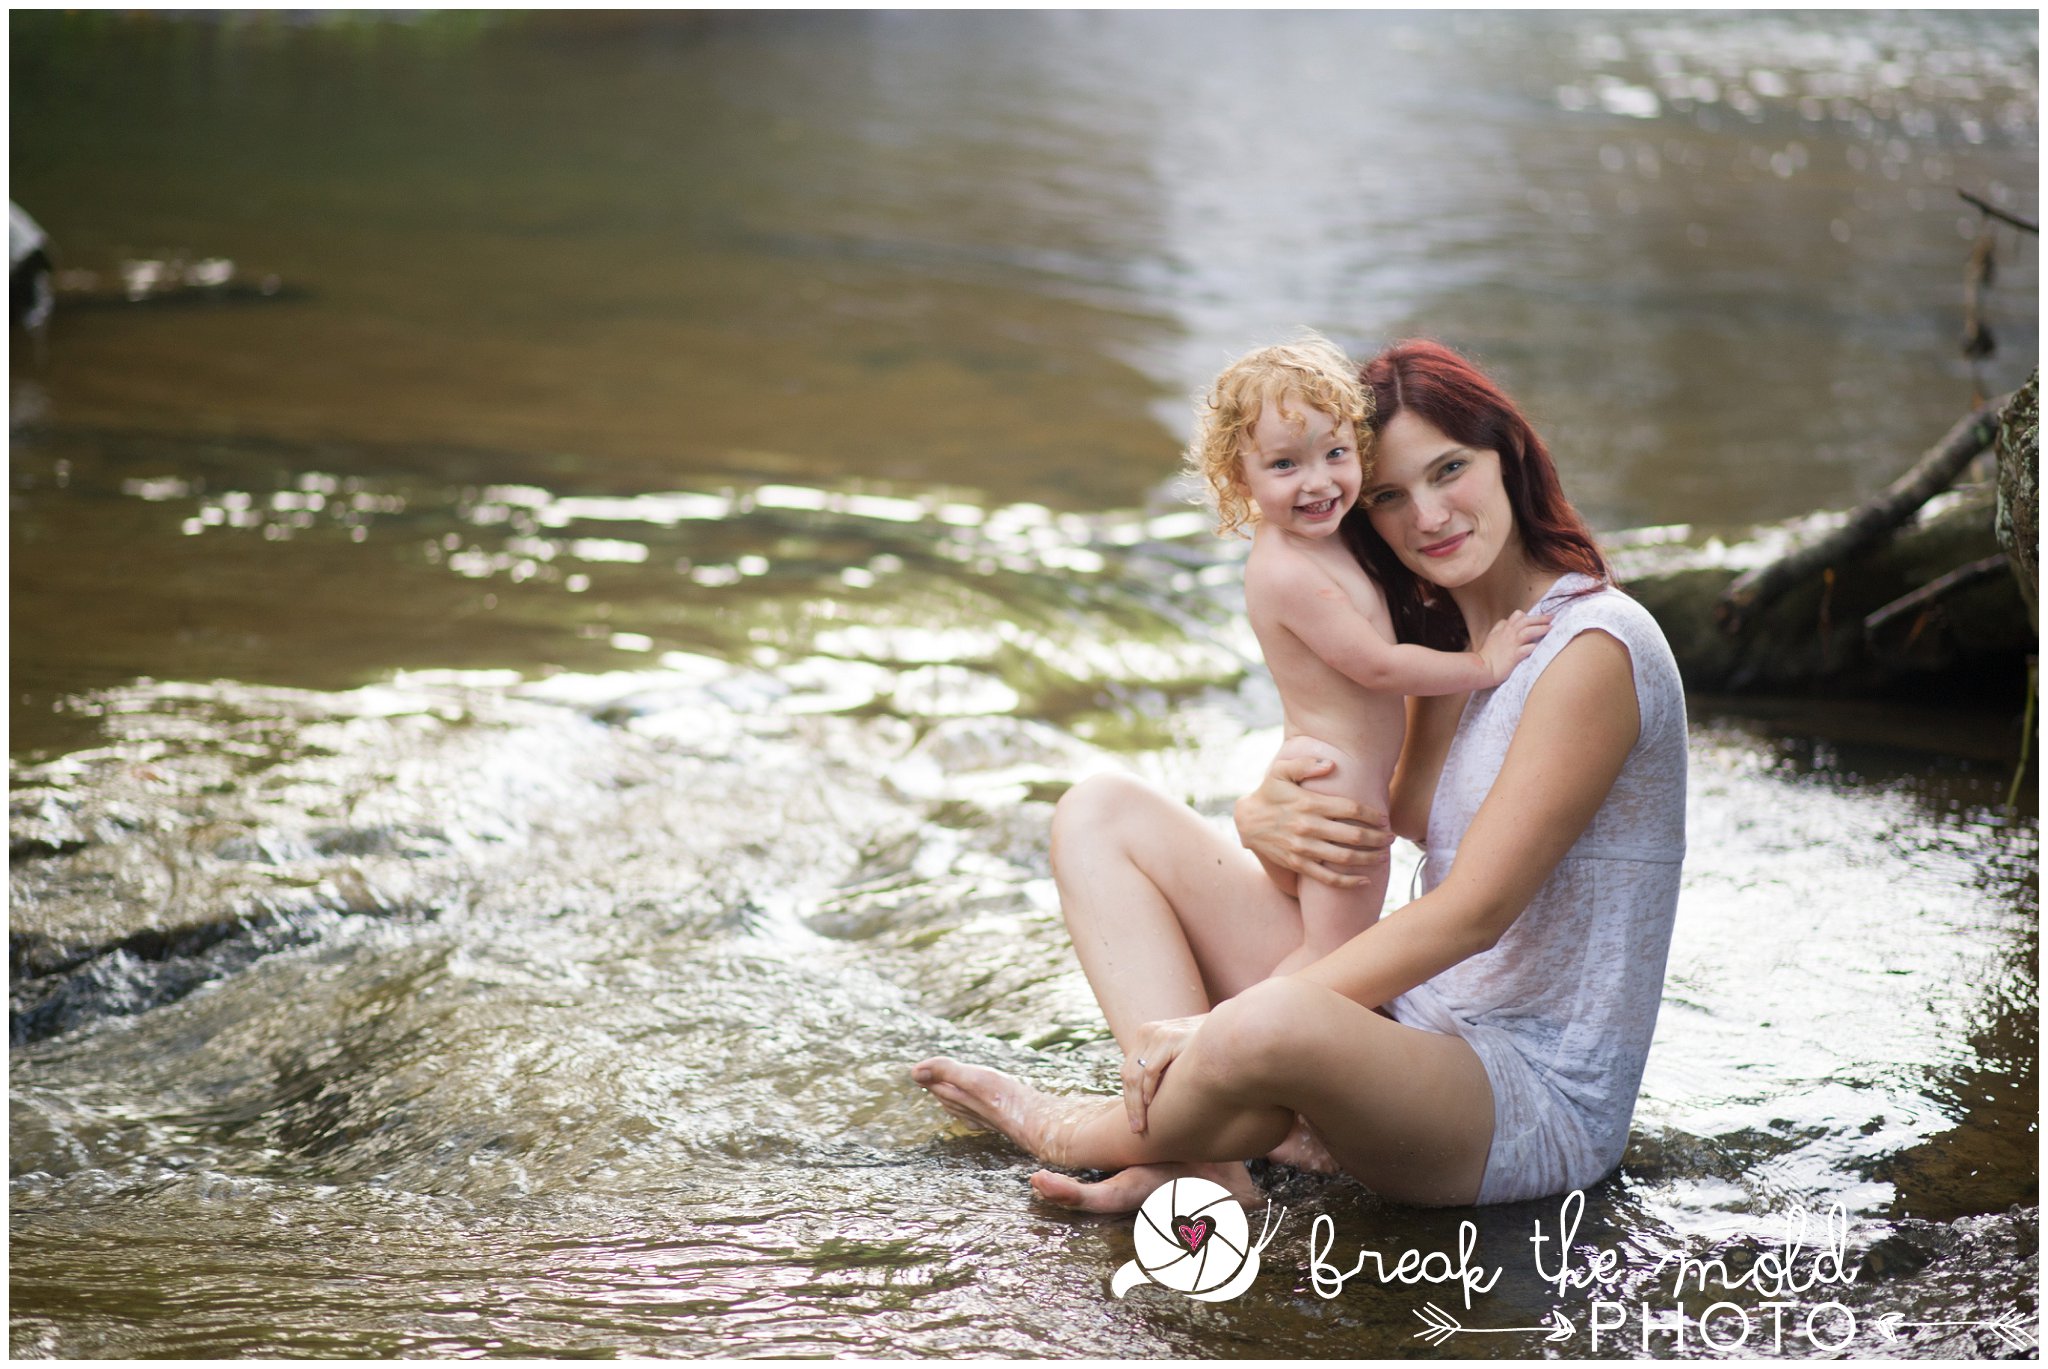 break-the-mold-photo-nursing-mothers-waterfall-women-celebrate-beauty_5434.jpg